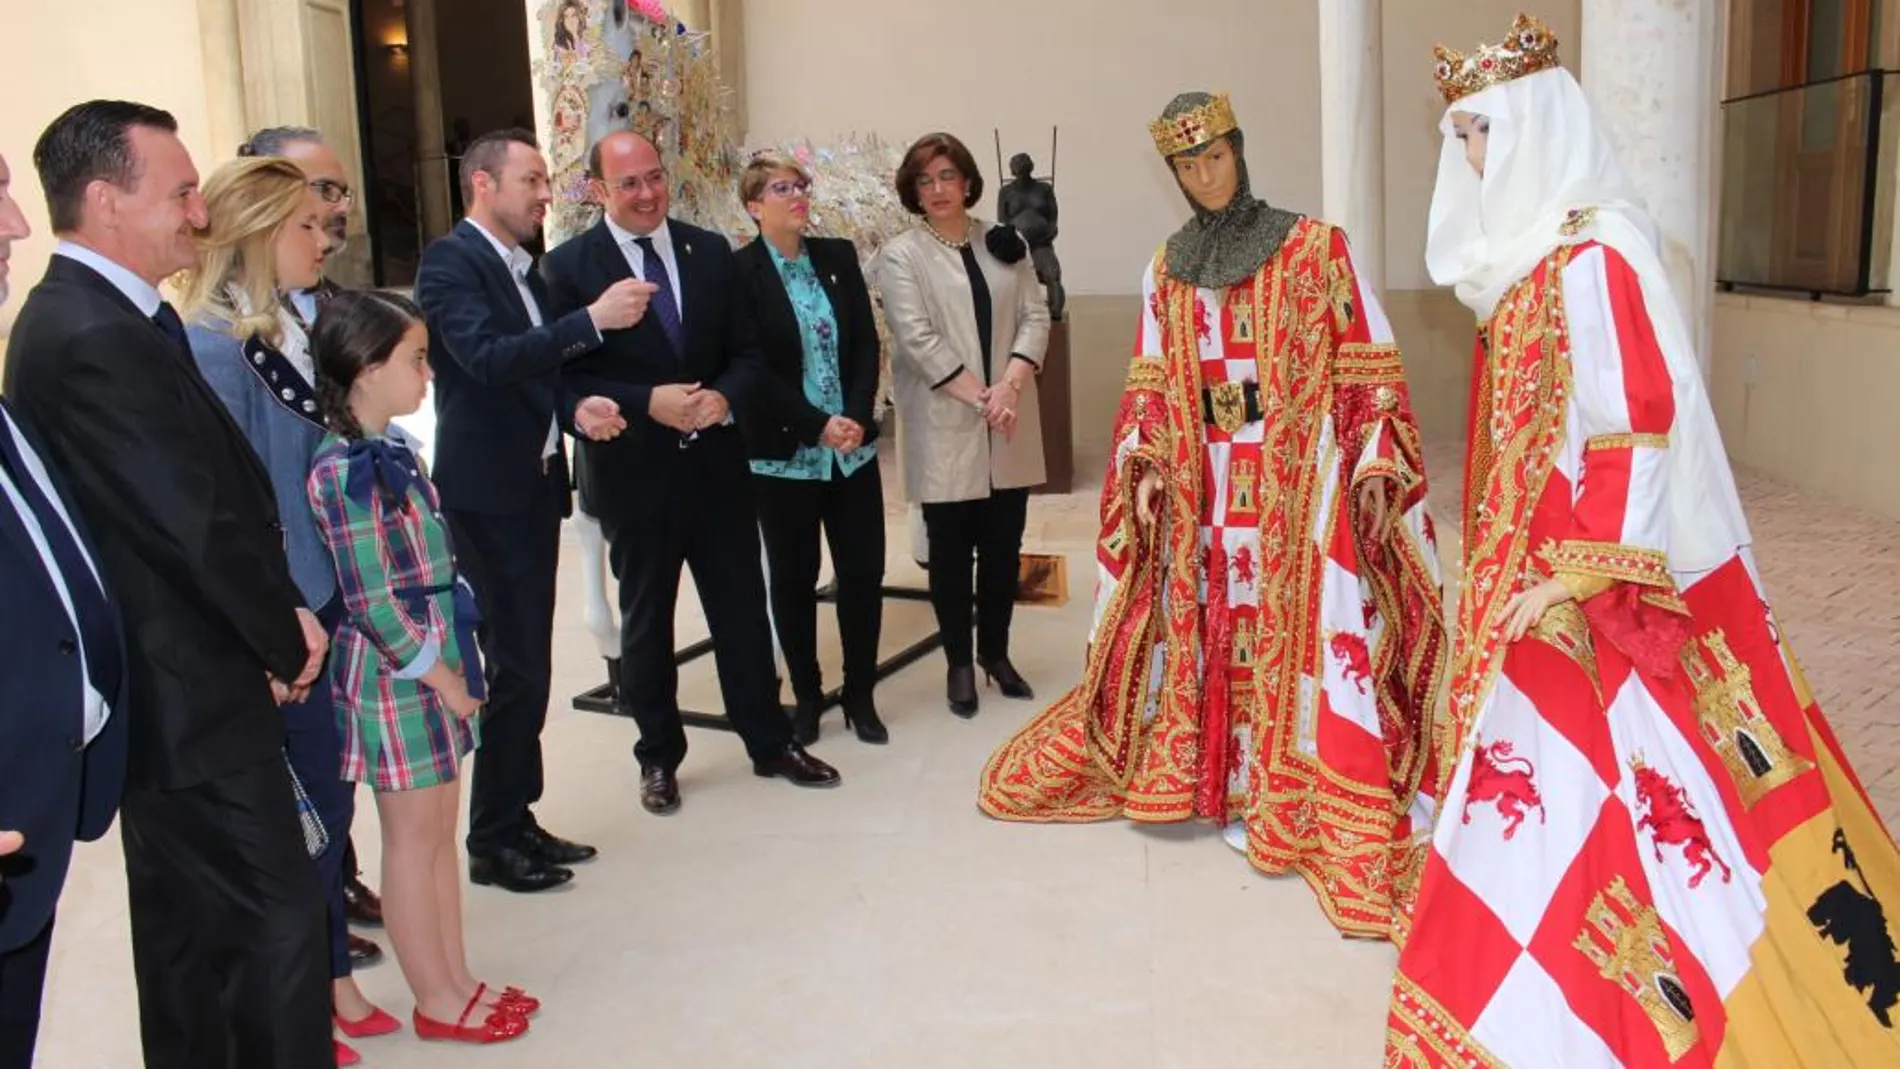 El presidente, Pedro Antonio Sánchez, conoció los mantos de los trajes cristianos